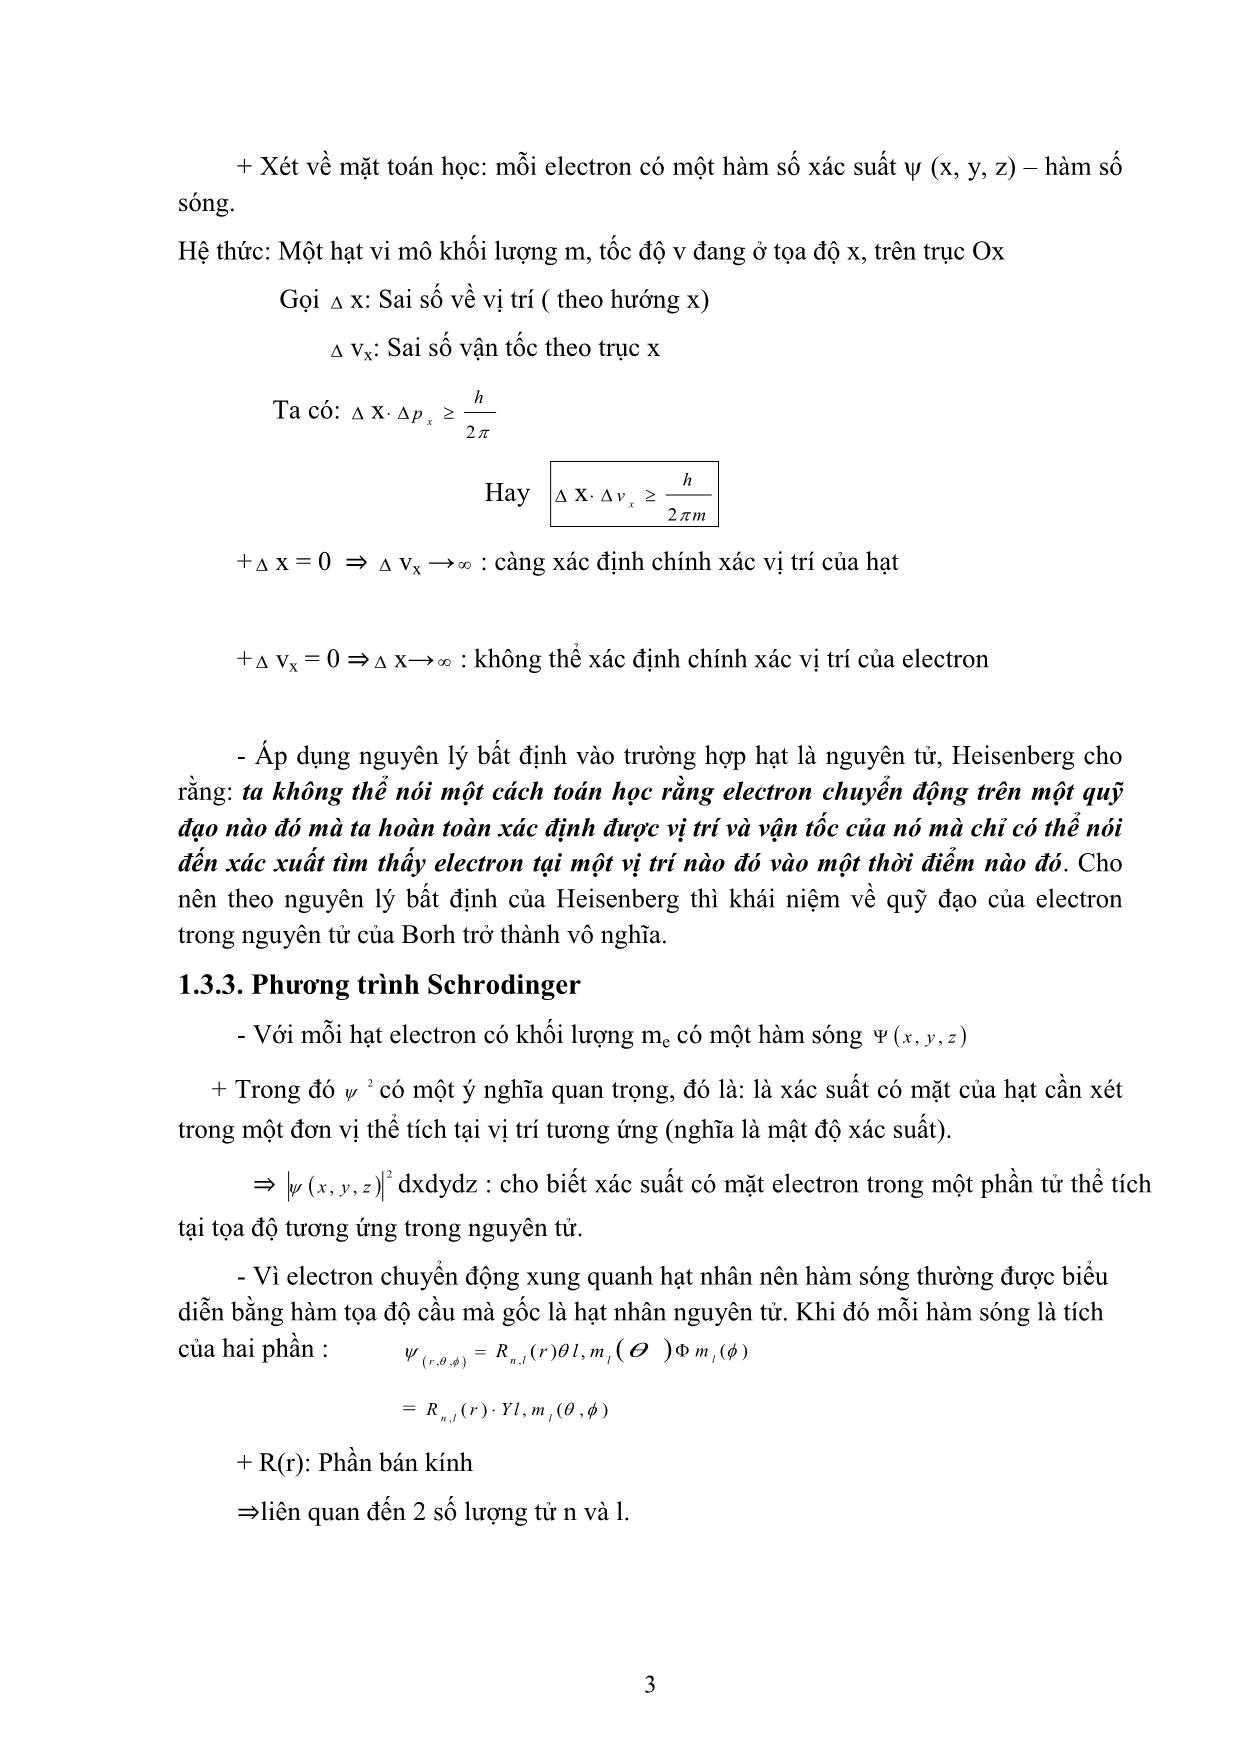 Bài giảng Hóa học đại cương A - Hoàng Hải Hậu (Phần 1) trang 8